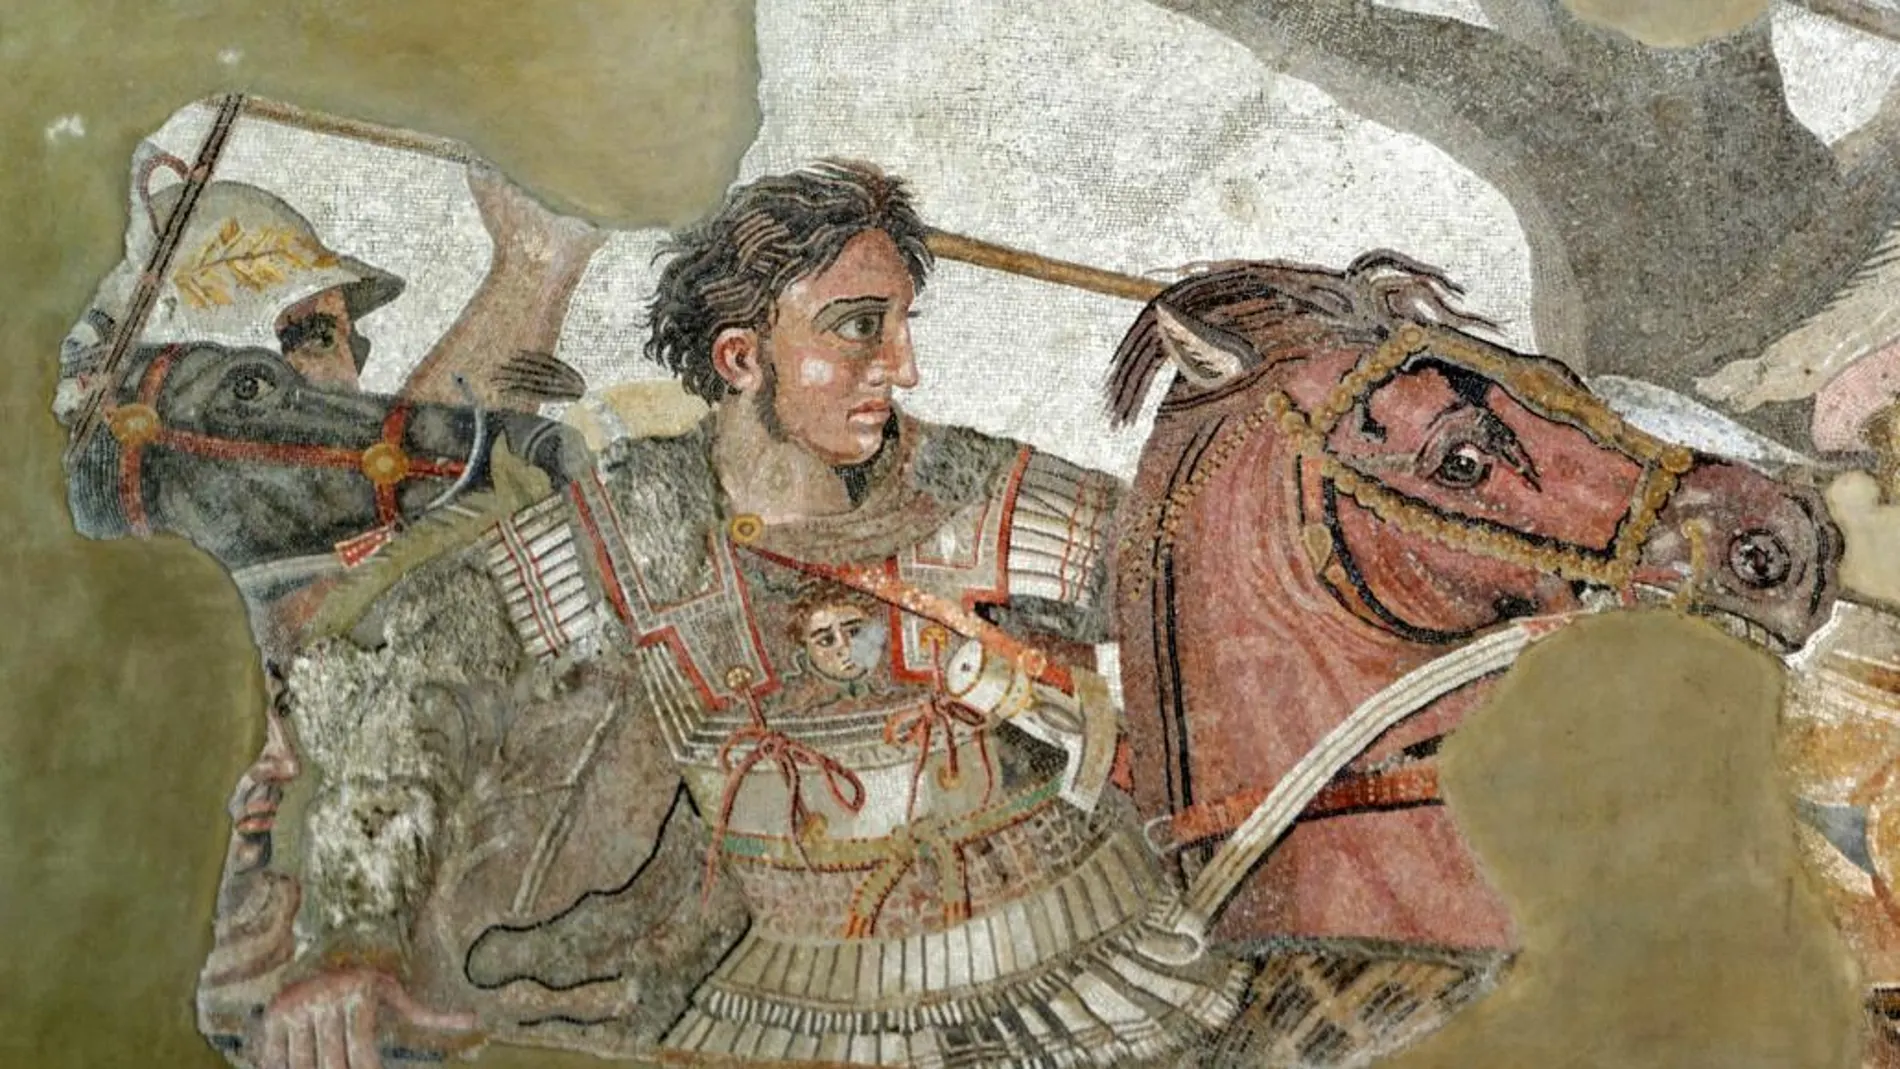 El mosaico de Issos muestra la batalla en la que Alejandro trata de llegar hasta Darío para capturarle o matarle